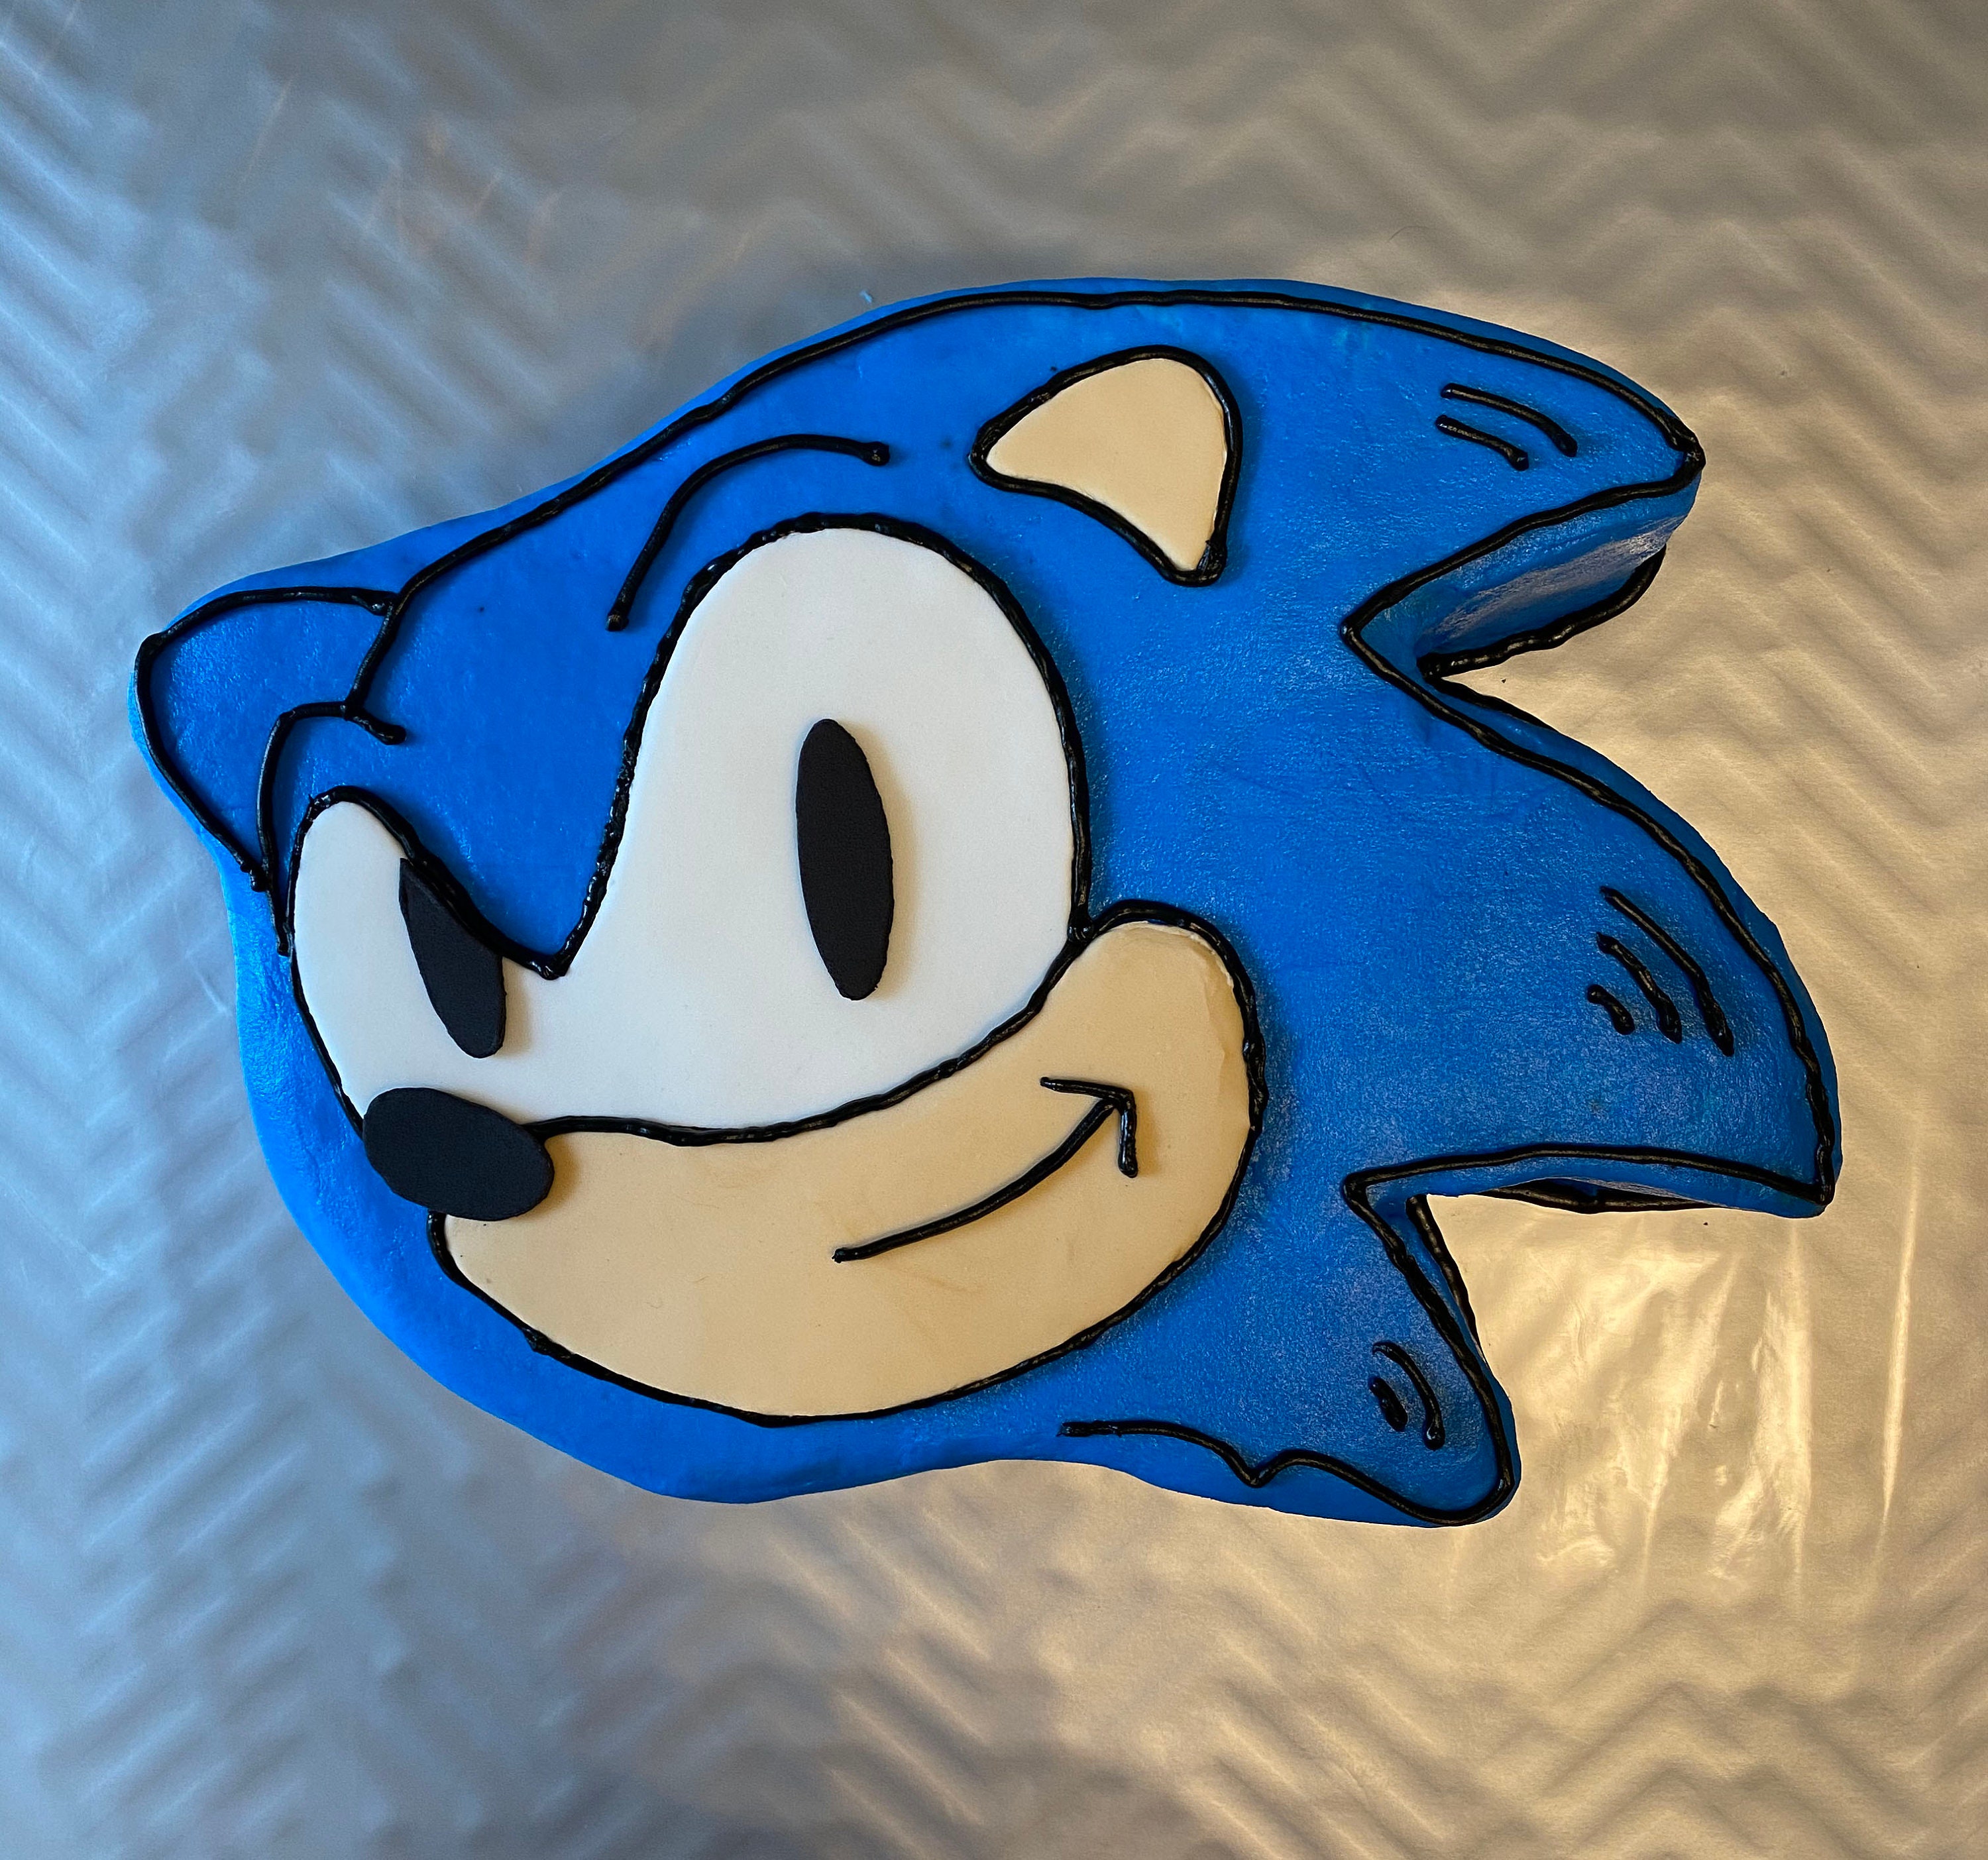 Sonic the Hedgehog II 2022 Edible Cake Toppers – Ediblecakeimage